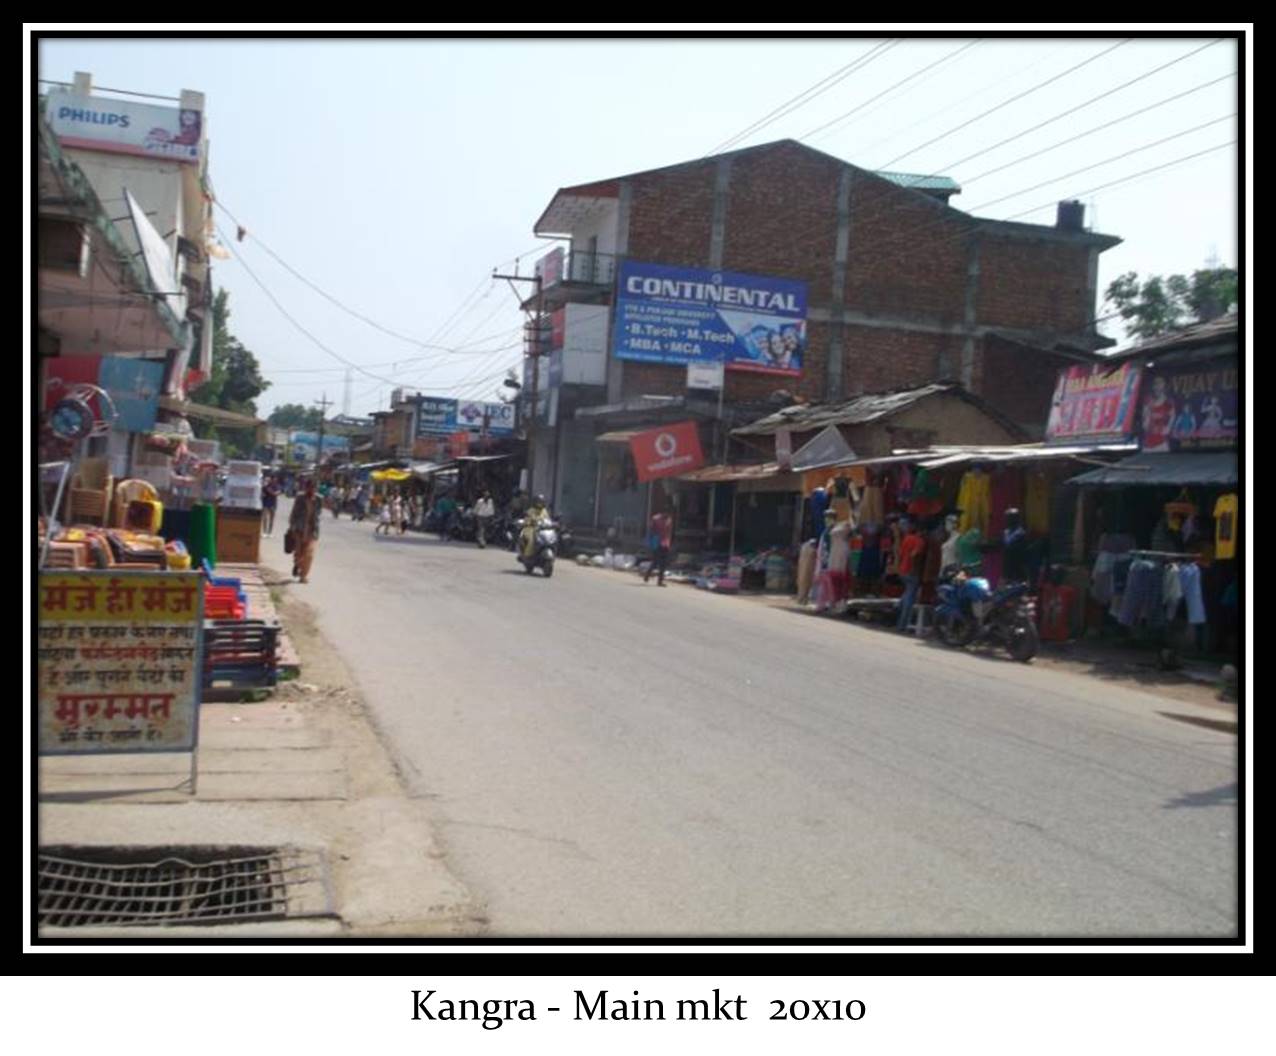 Main Market, Kangra